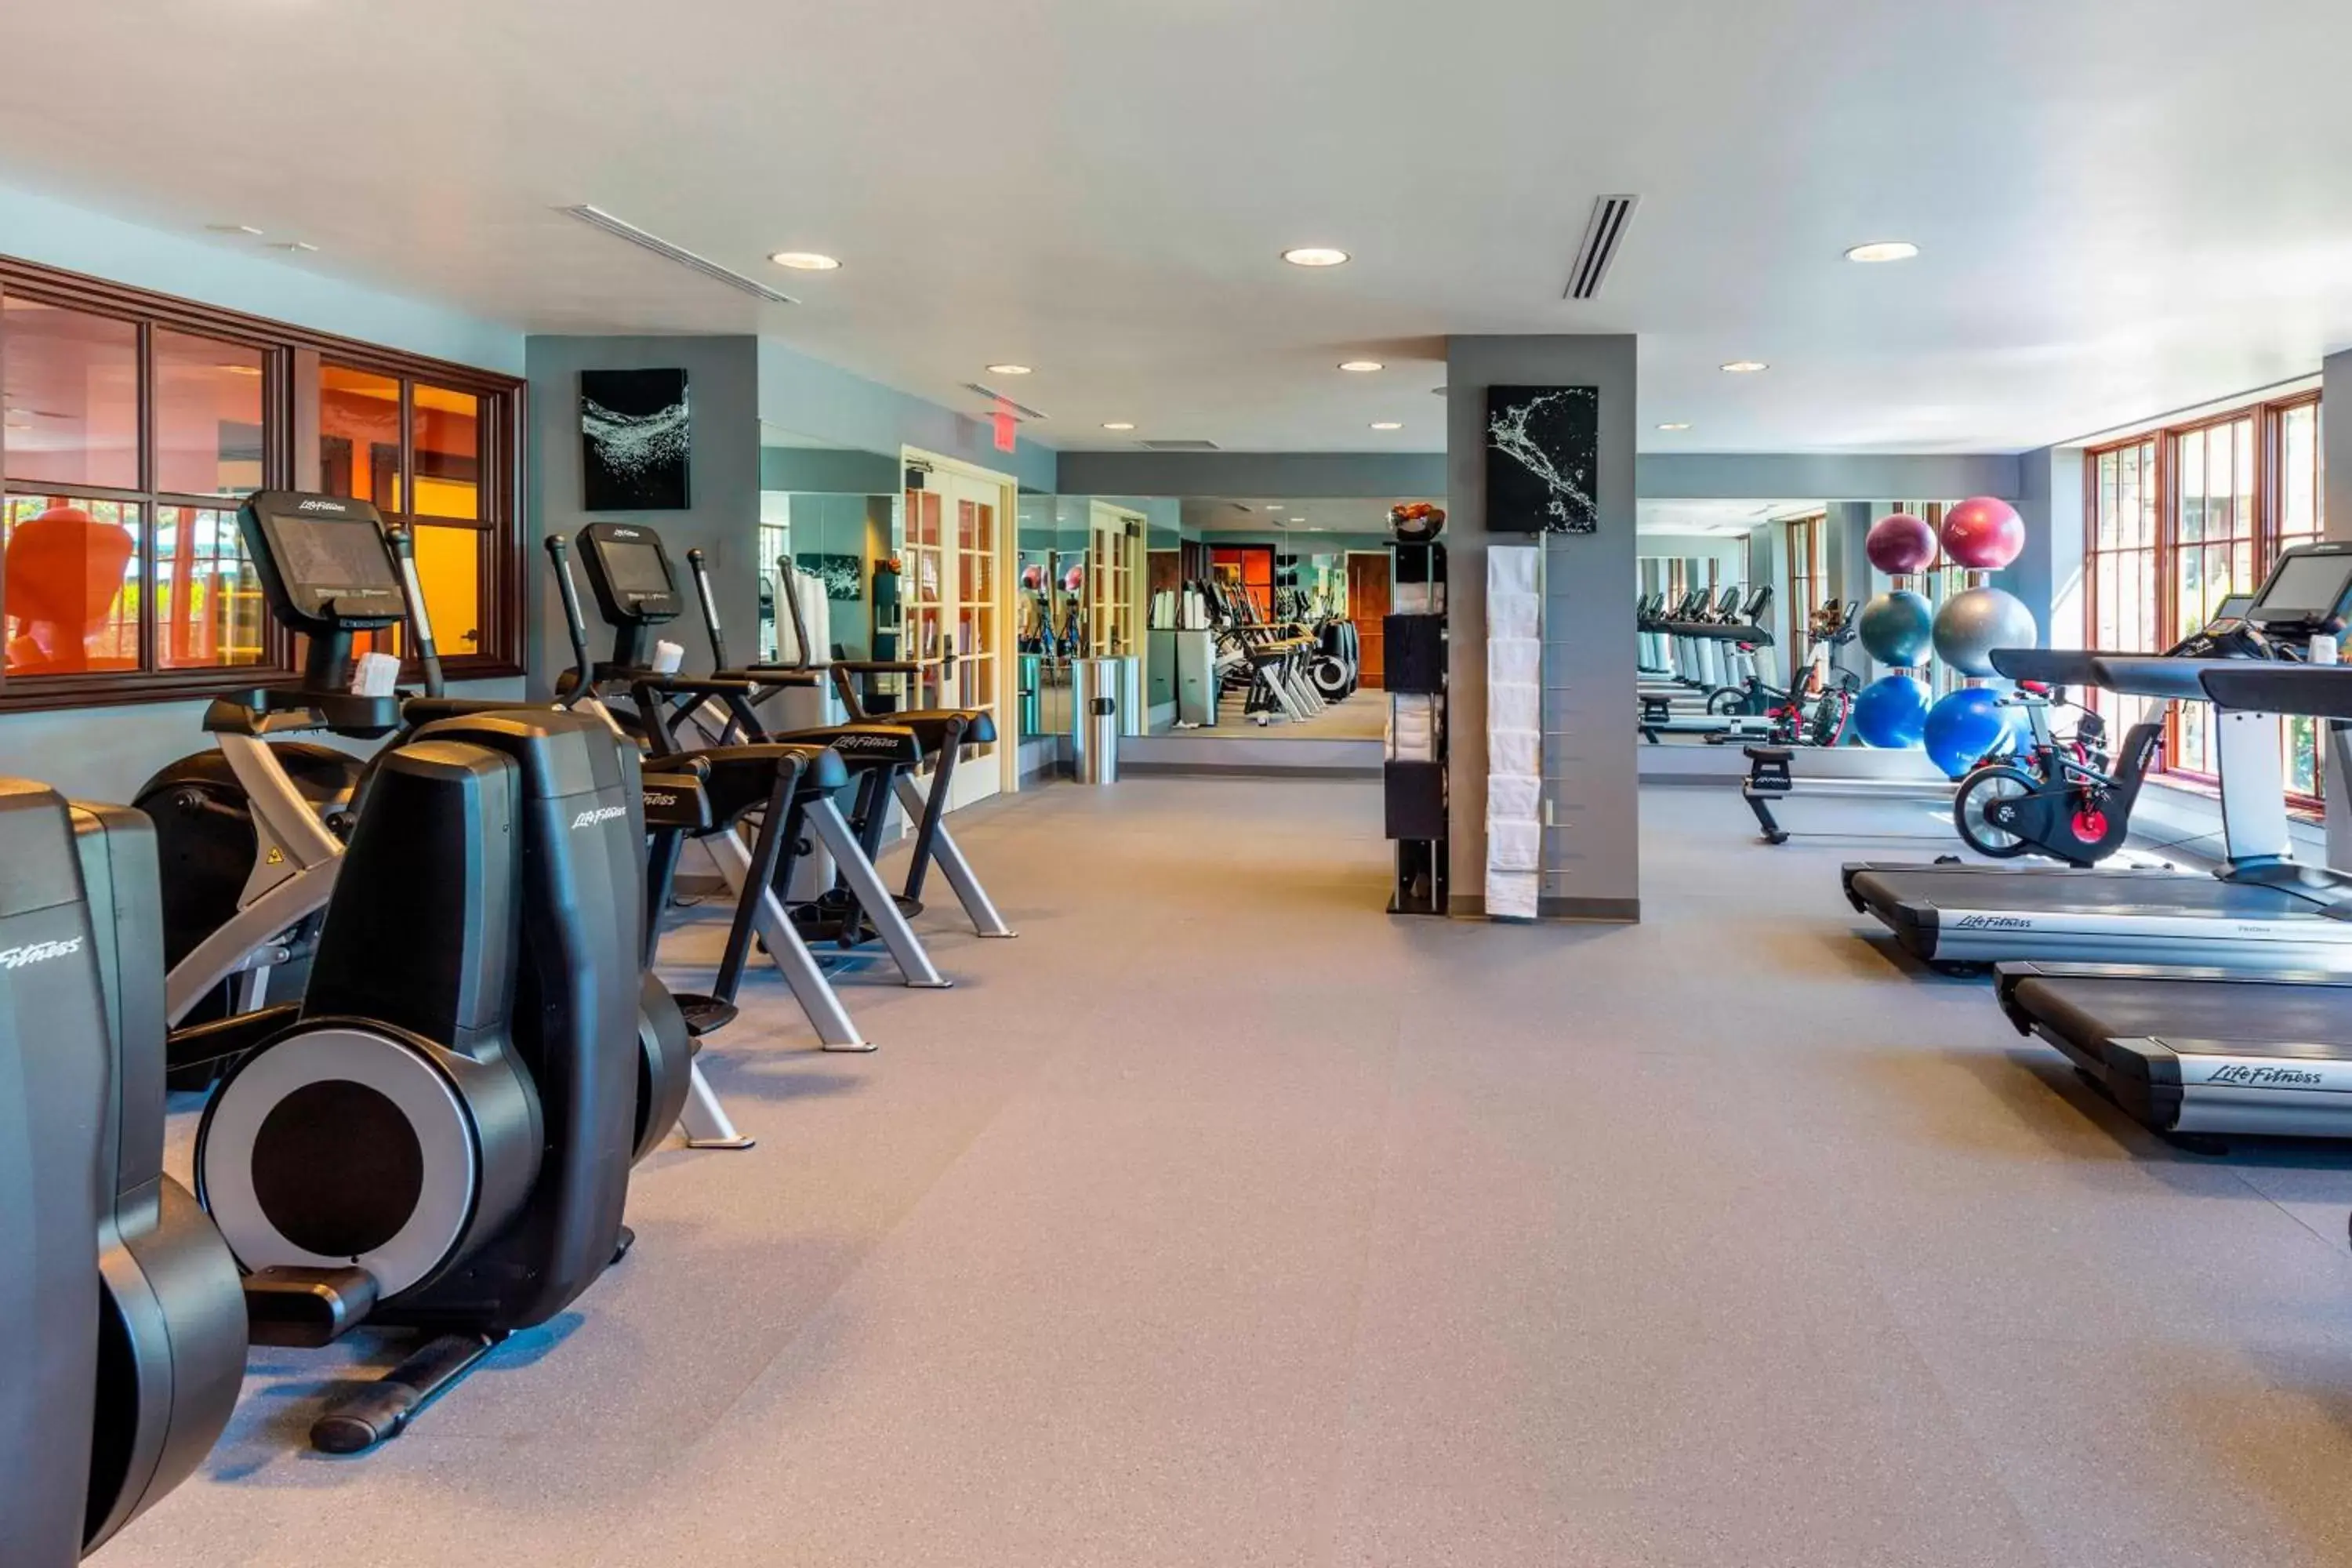 Fitness centre/facilities, Fitness Center/Facilities in Renaissance Birmingham Ross Bridge Golf Resort & Spa